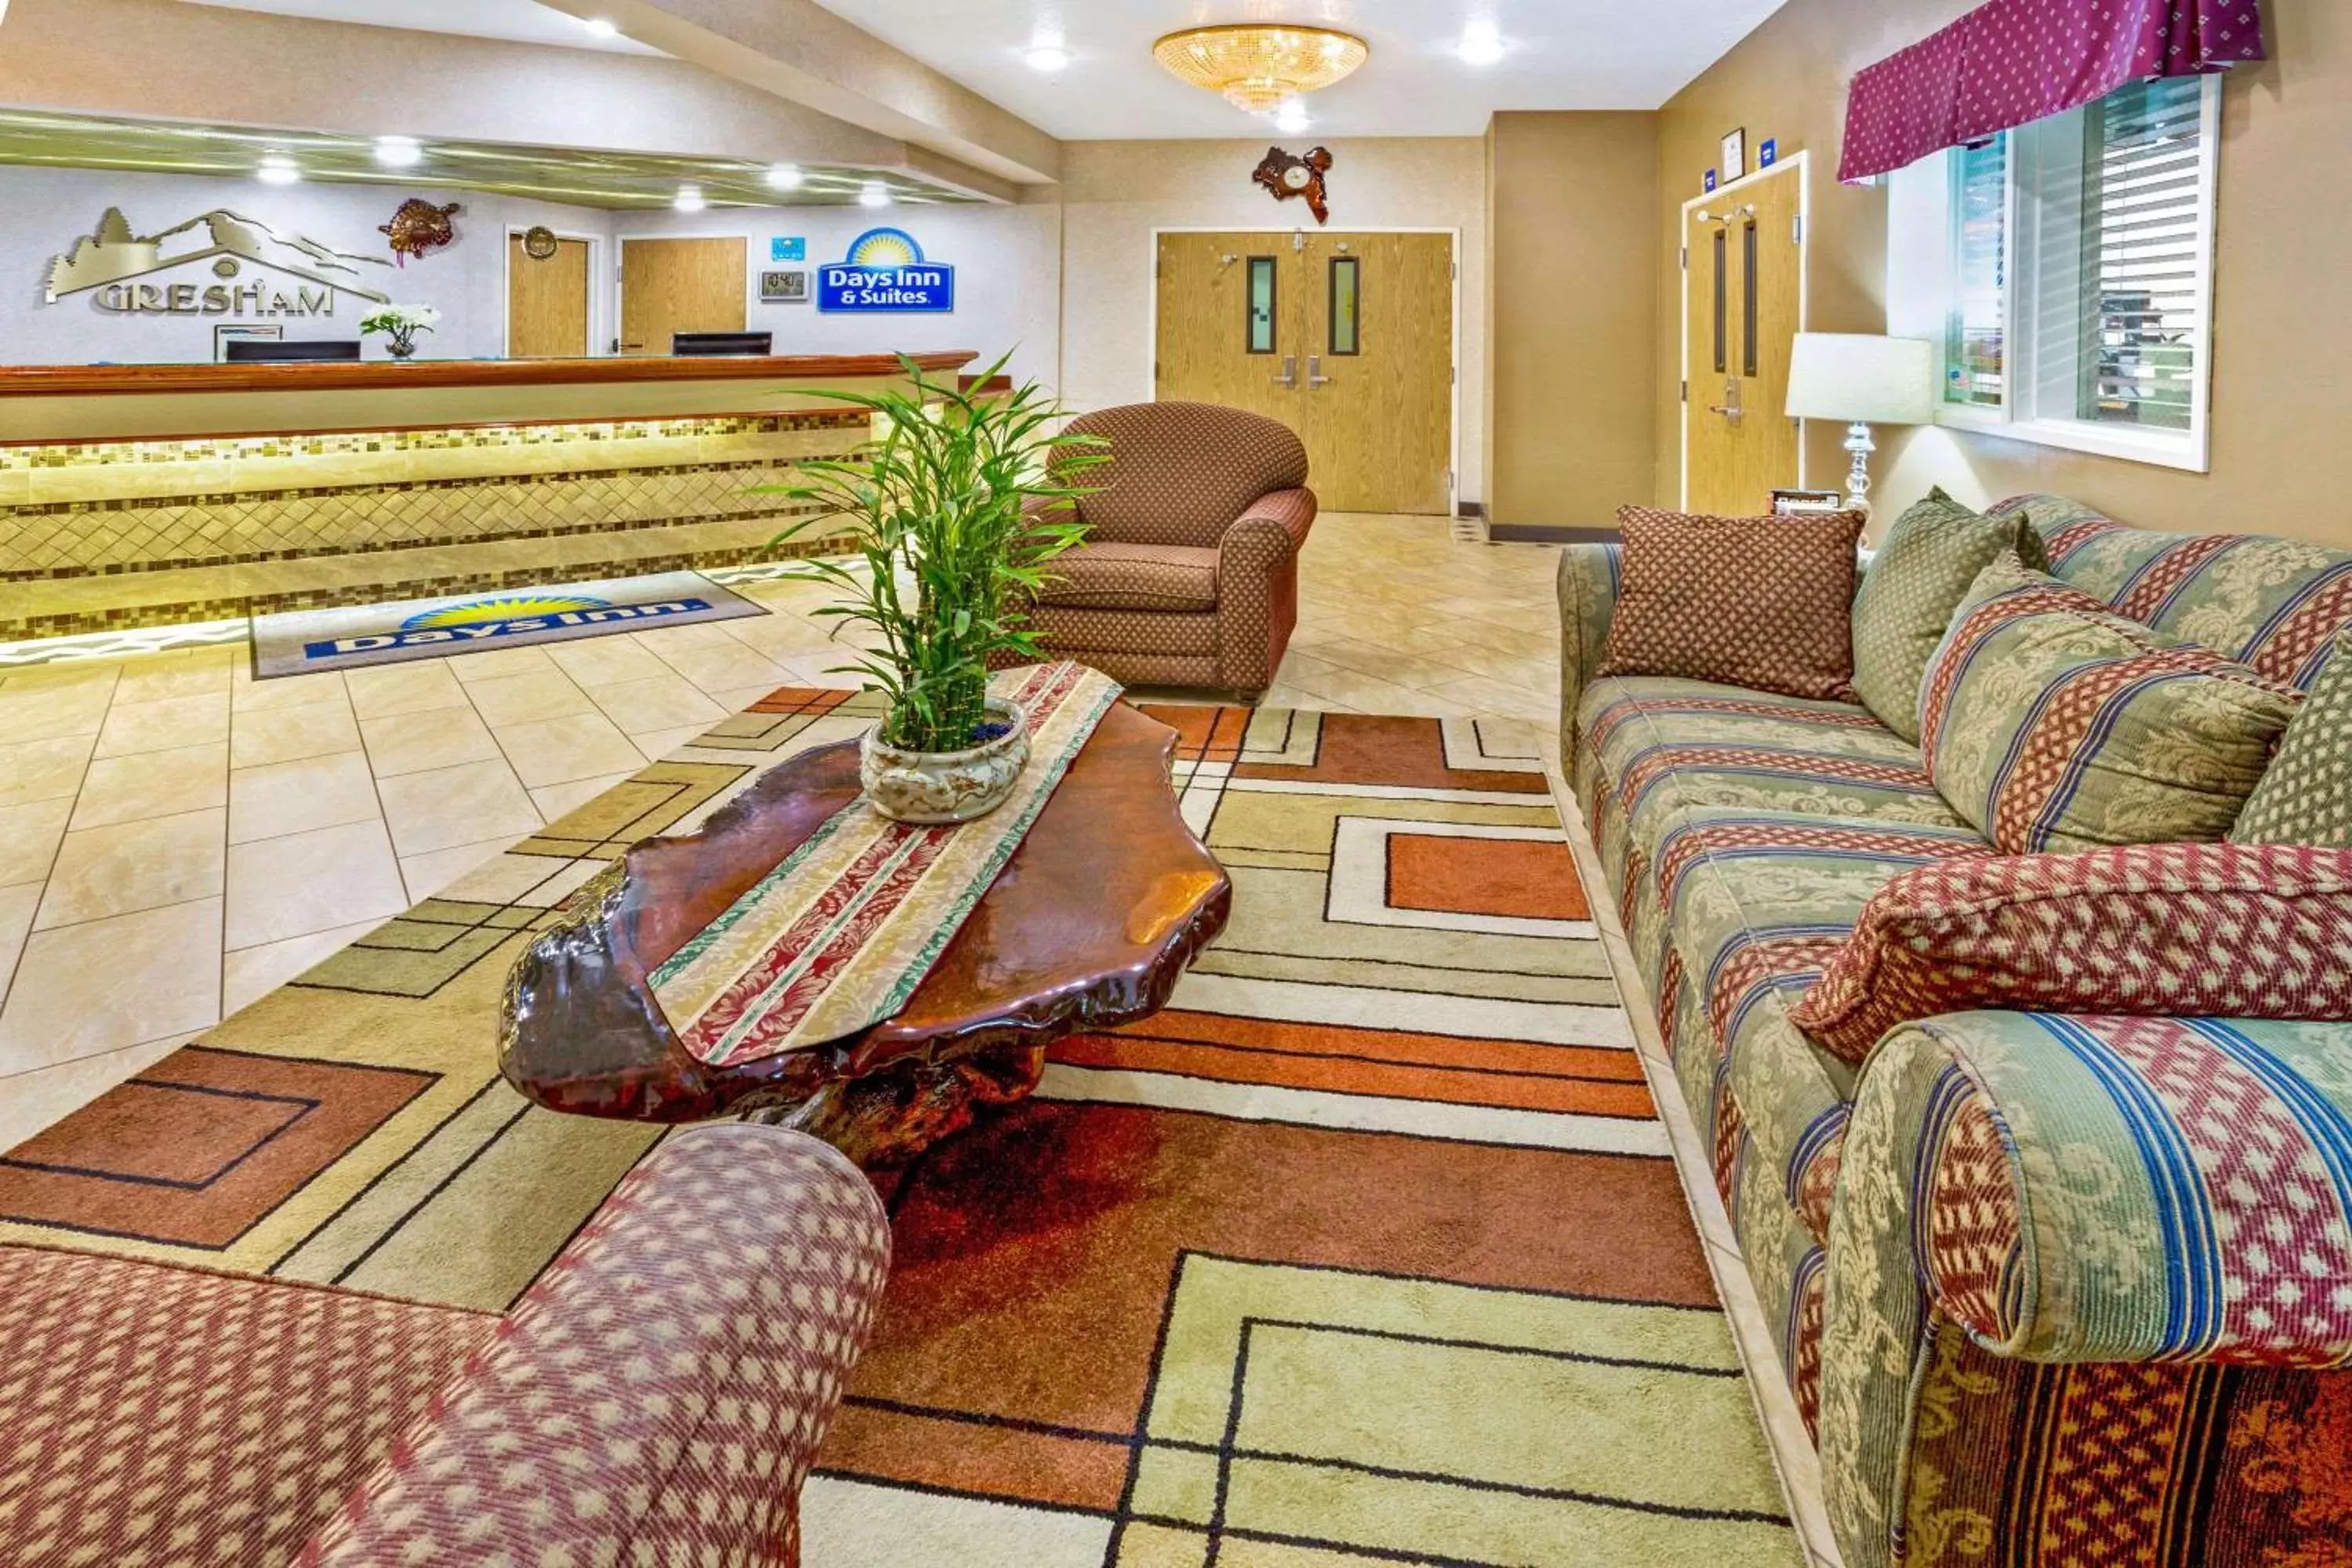 Lobby or reception, Lobby/Reception in Days Inn & Suites by Wyndham Gresham